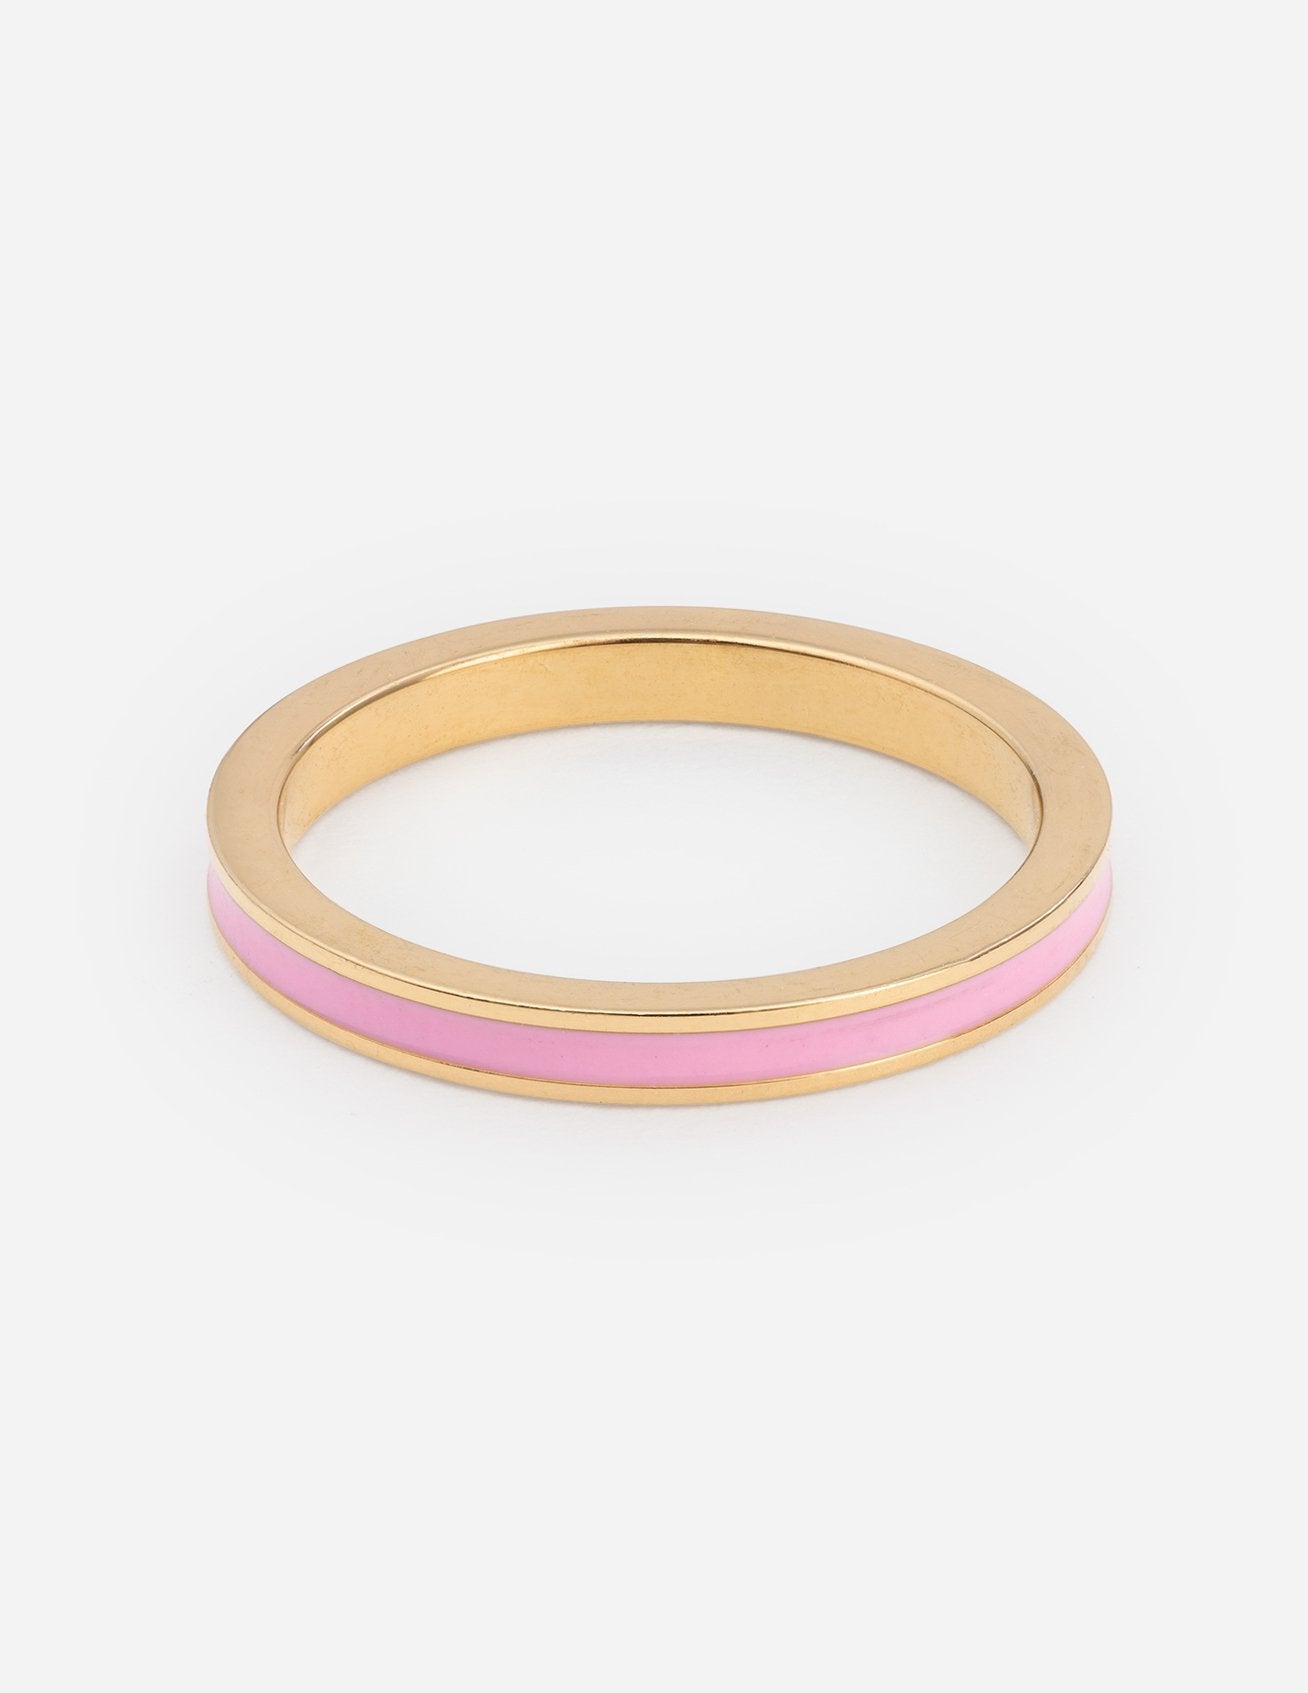 Pink Enamel Smiley Heart Ring, Christian Rings